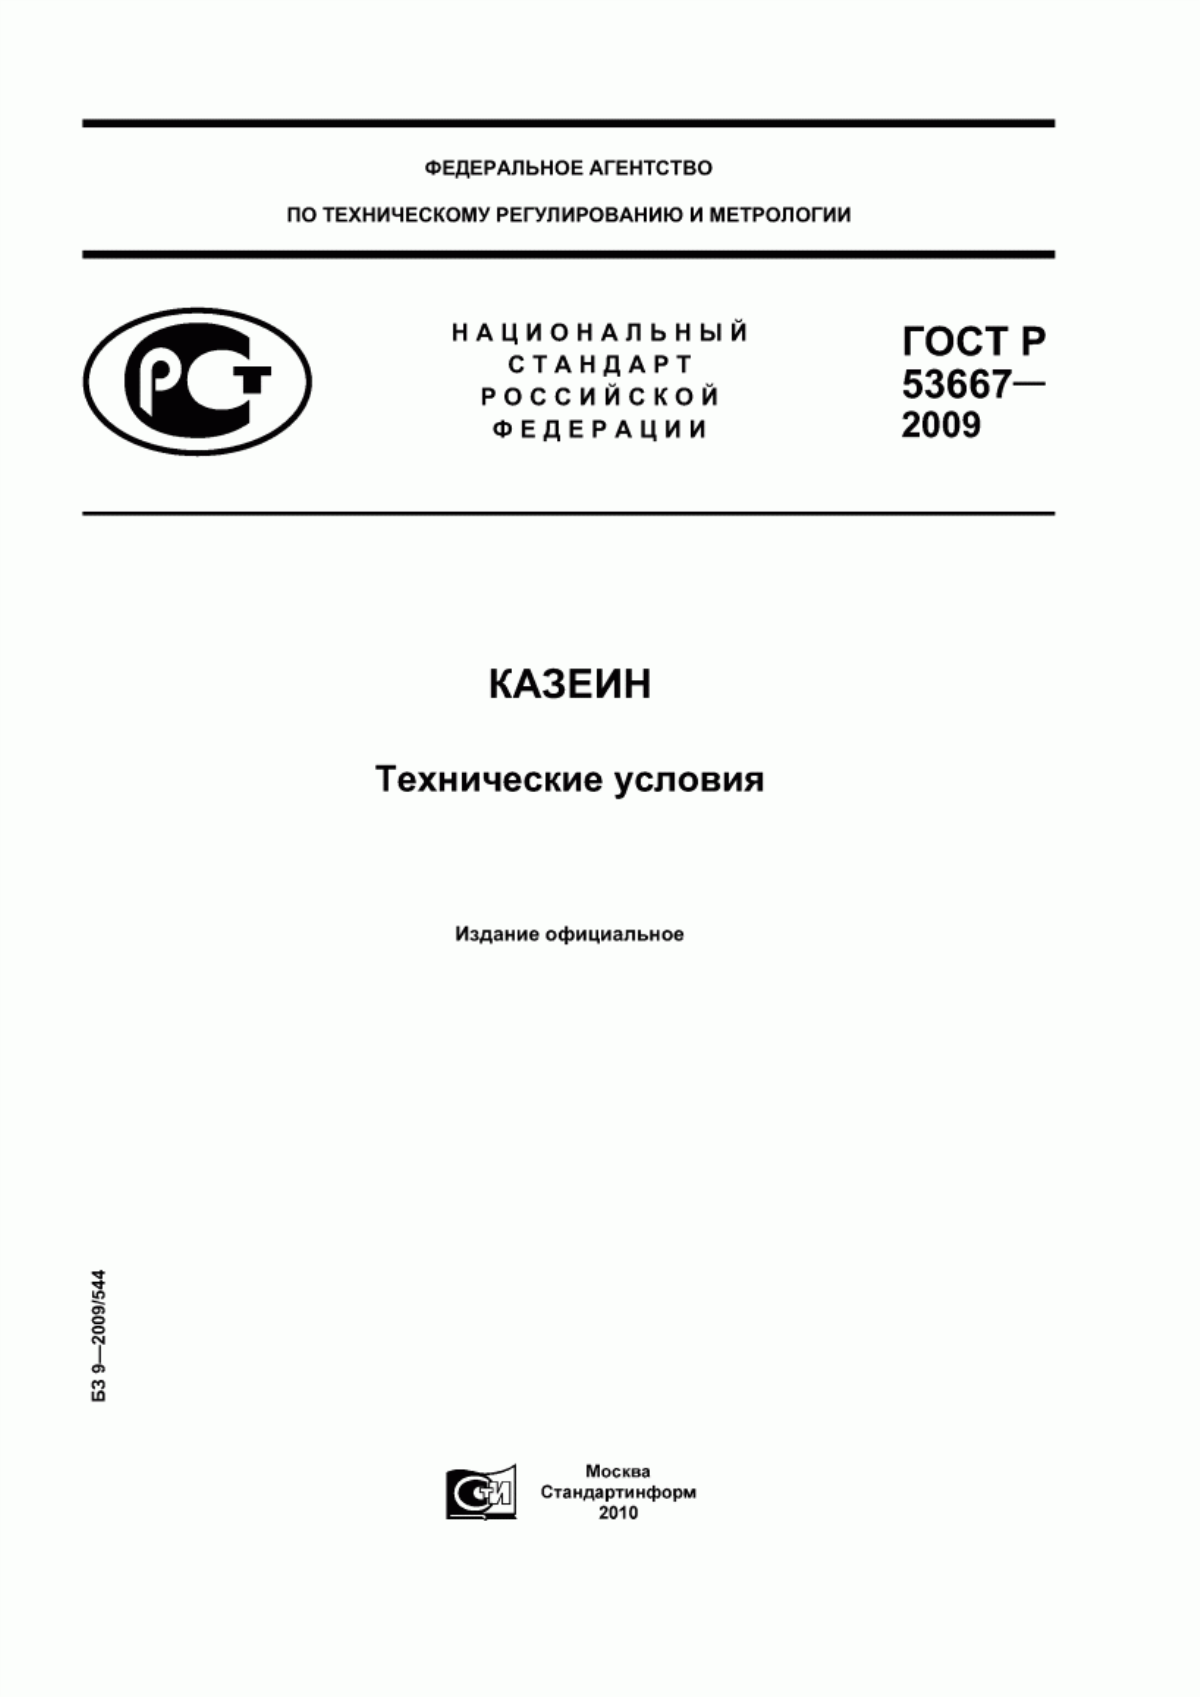 ГОСТ Р 53667-2009 Казеин. Технические условия